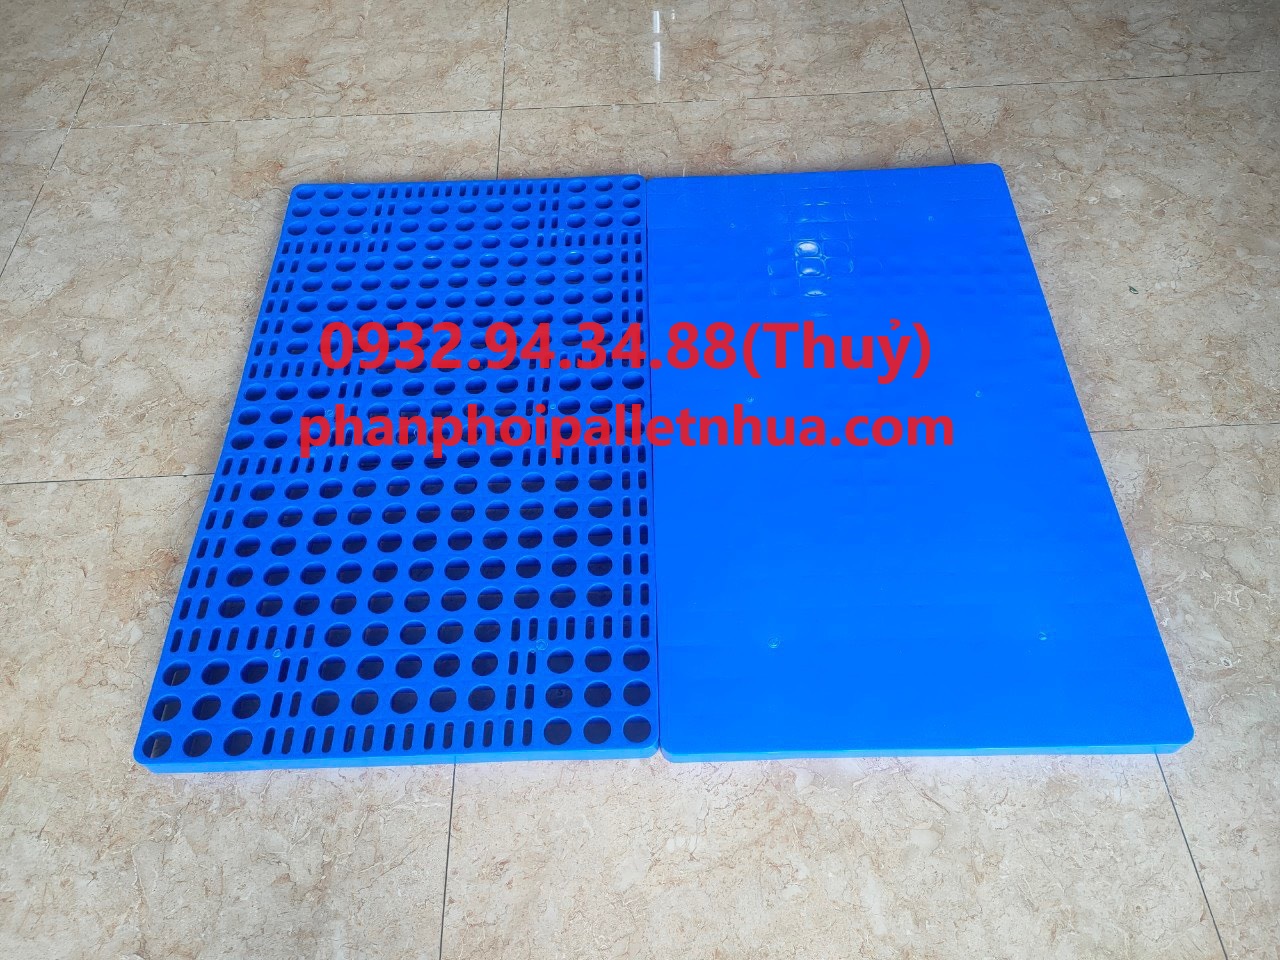 mua pallet nhựa cũ tại Trà Vinh, liên hệ 0932943488